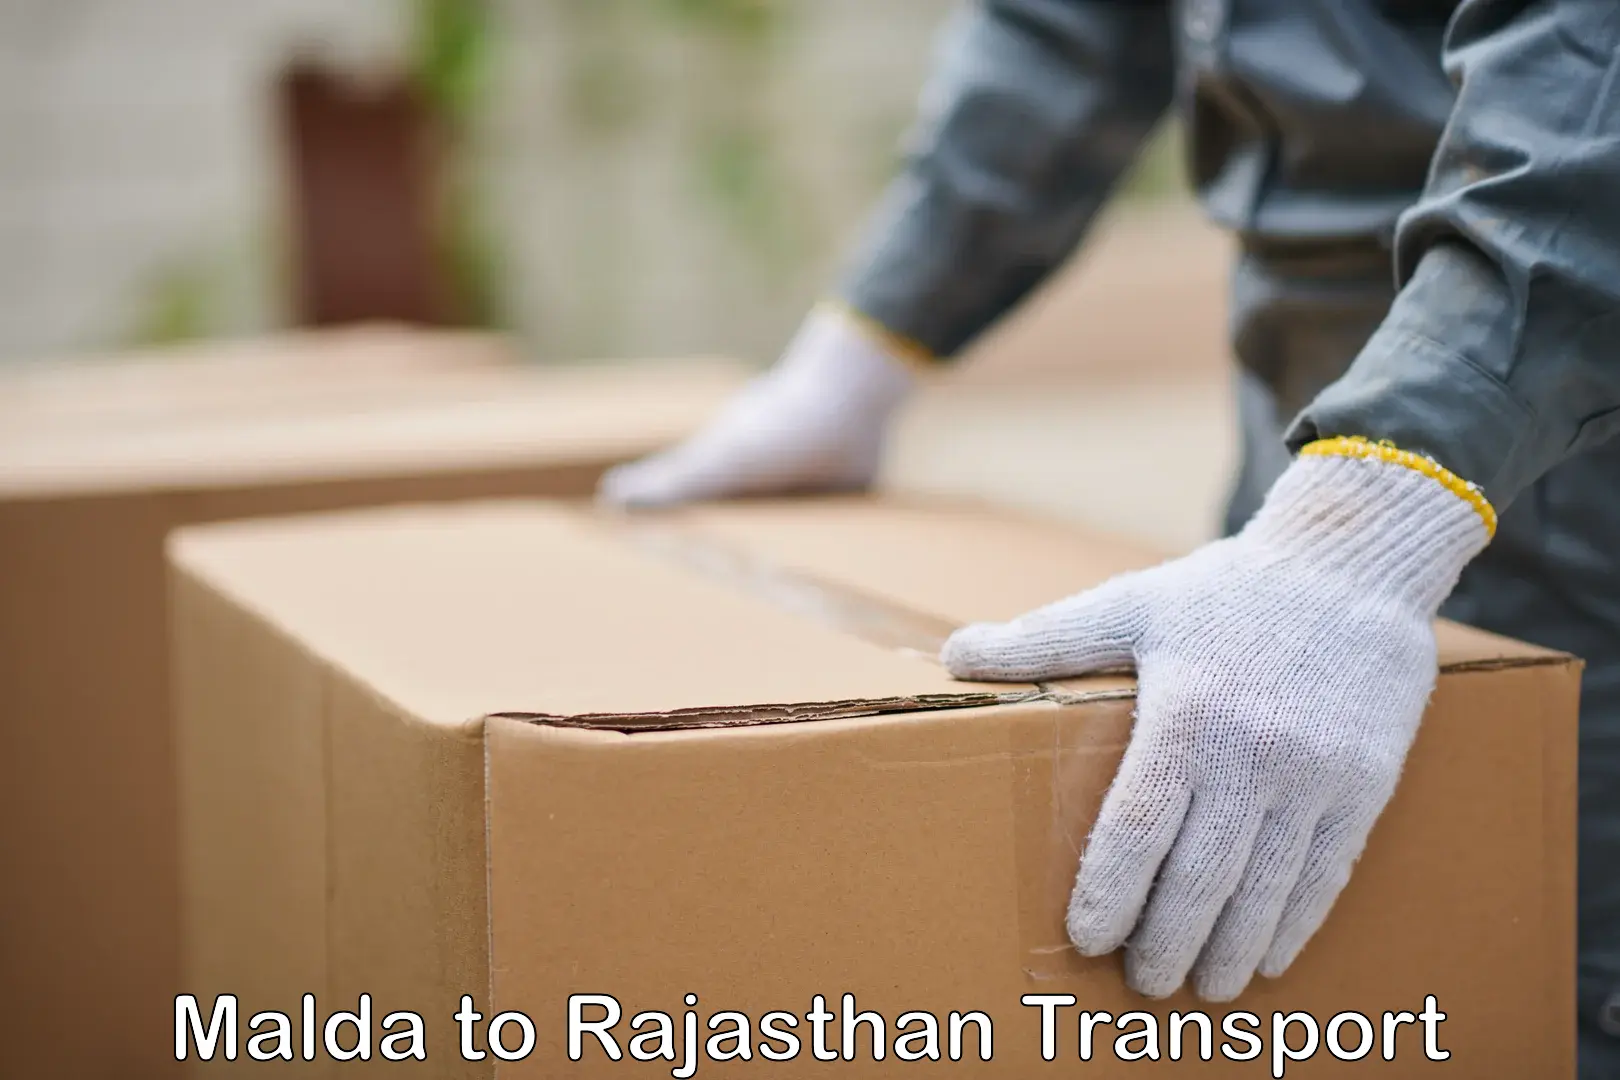 Land transport services Malda to Rajasthan